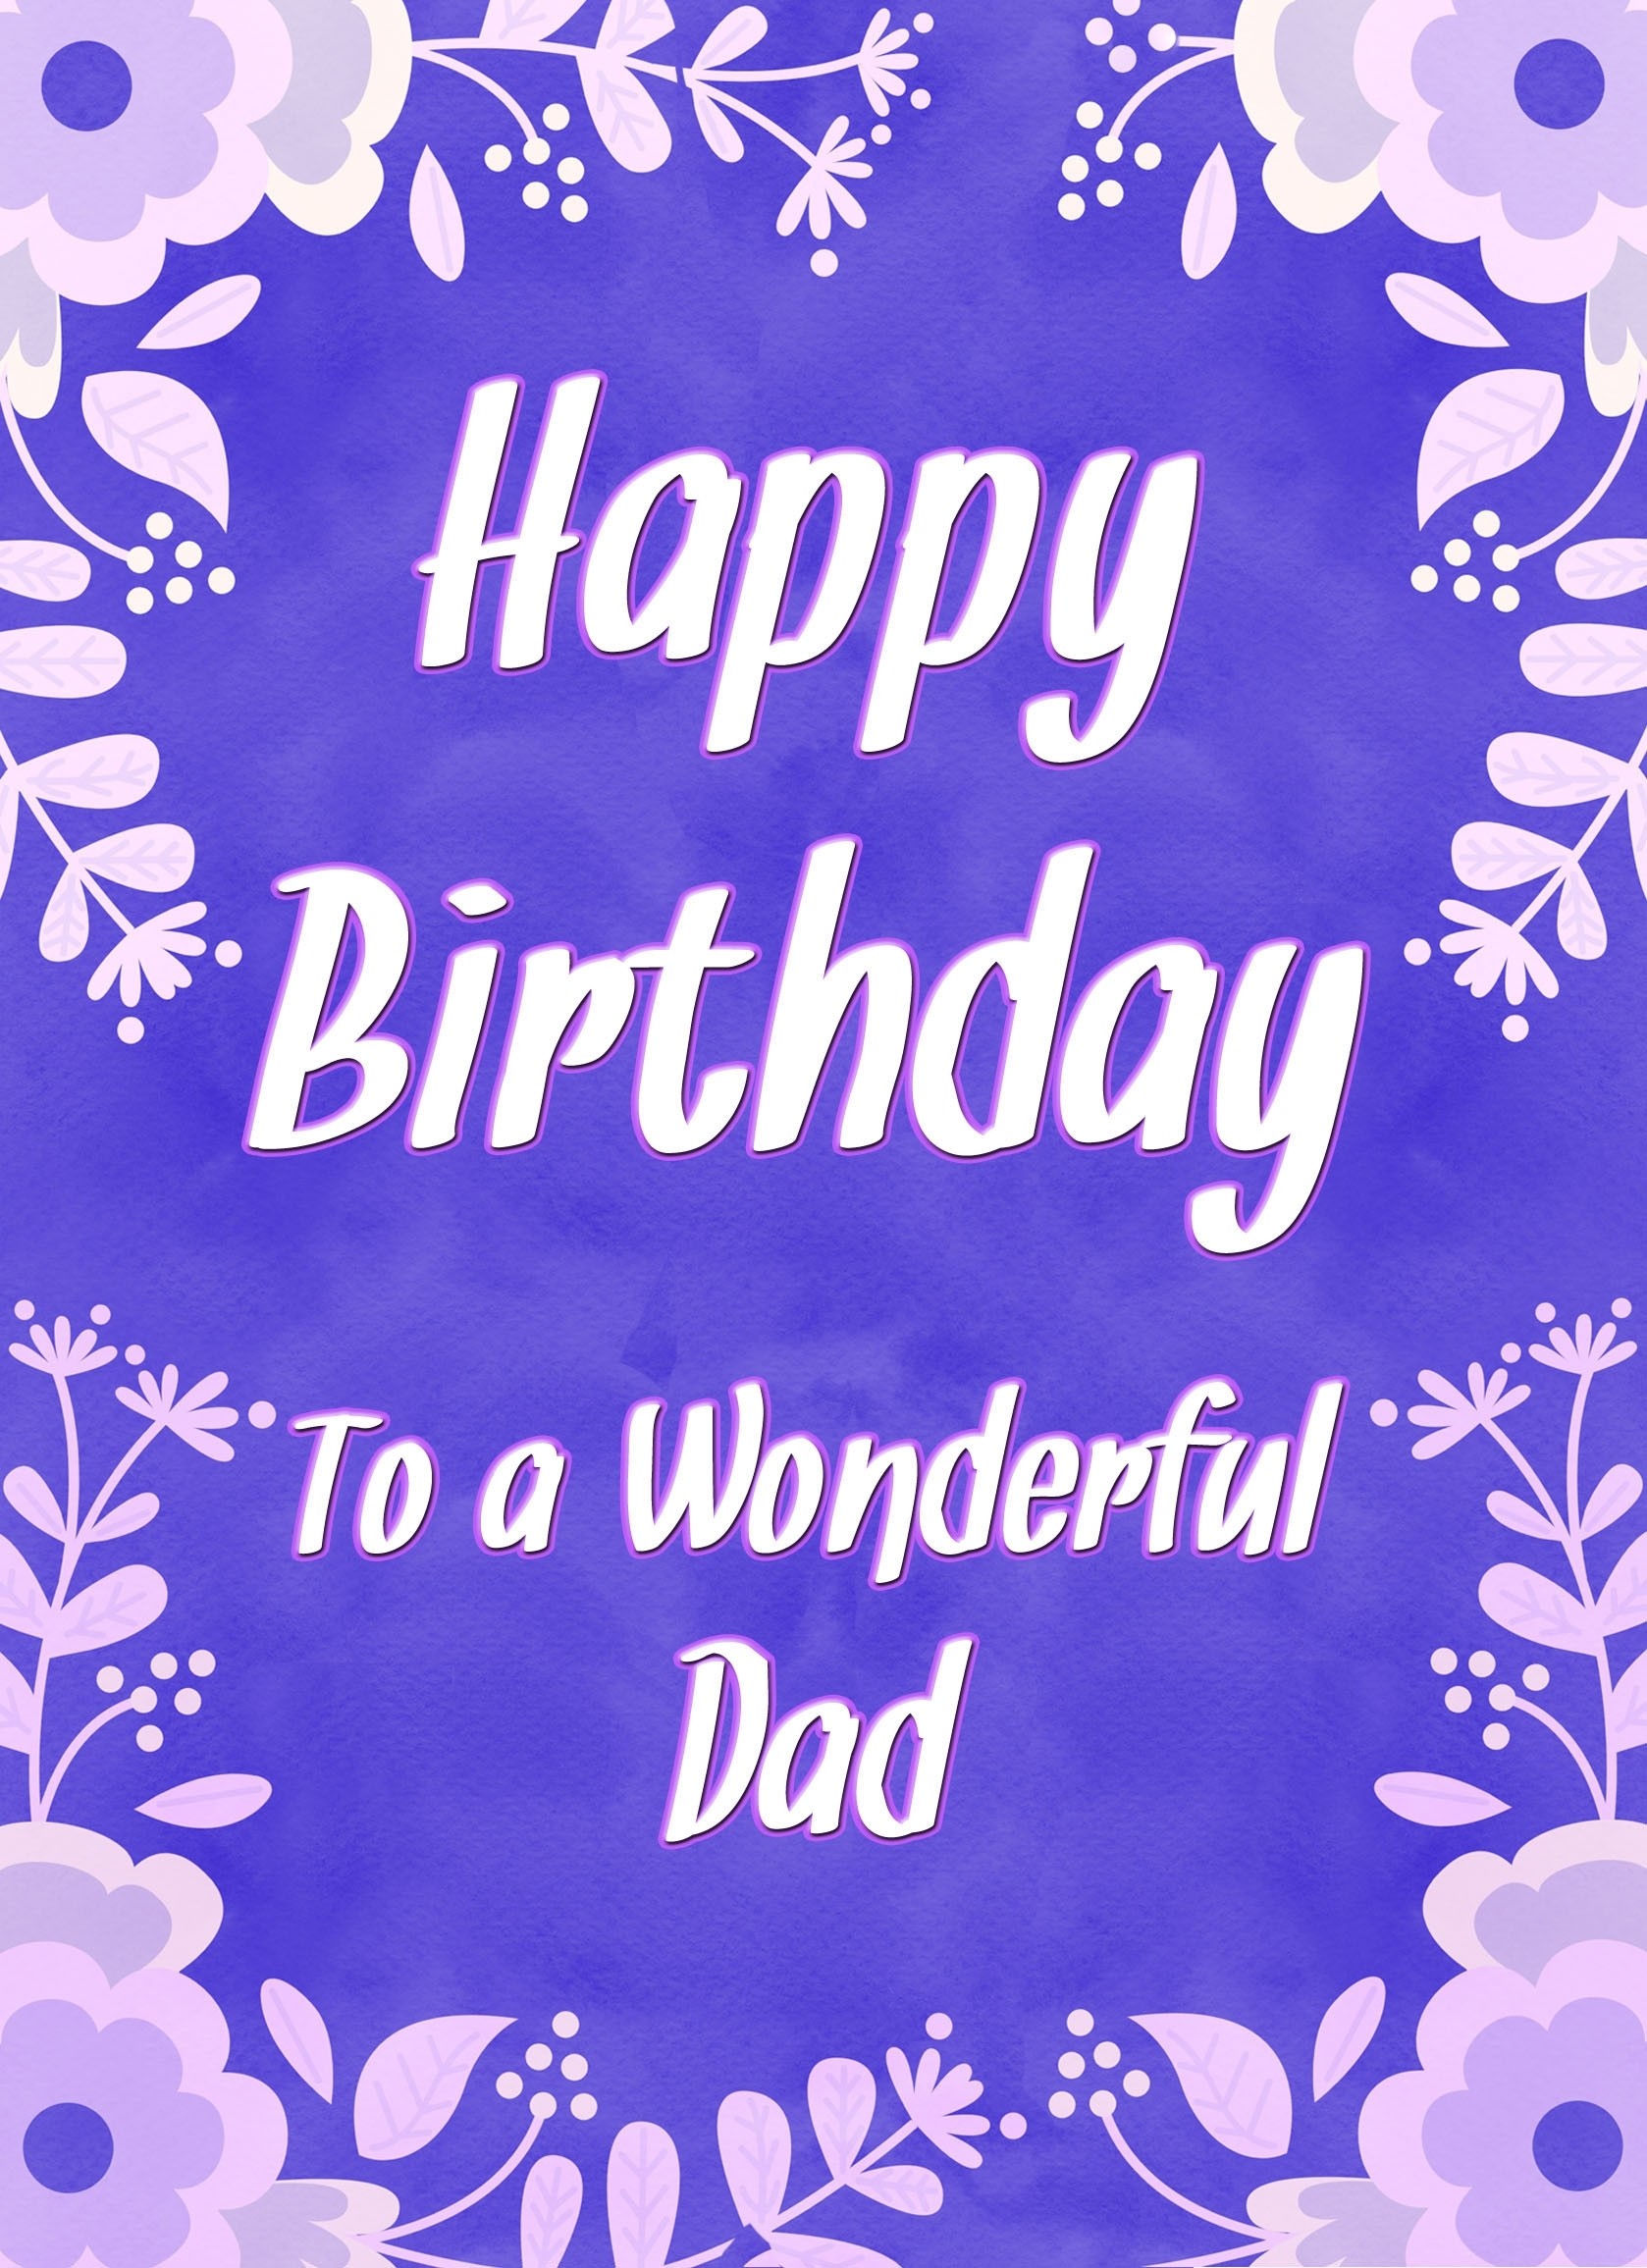 Birthday Card For Wonderful Dad (Purple Border)